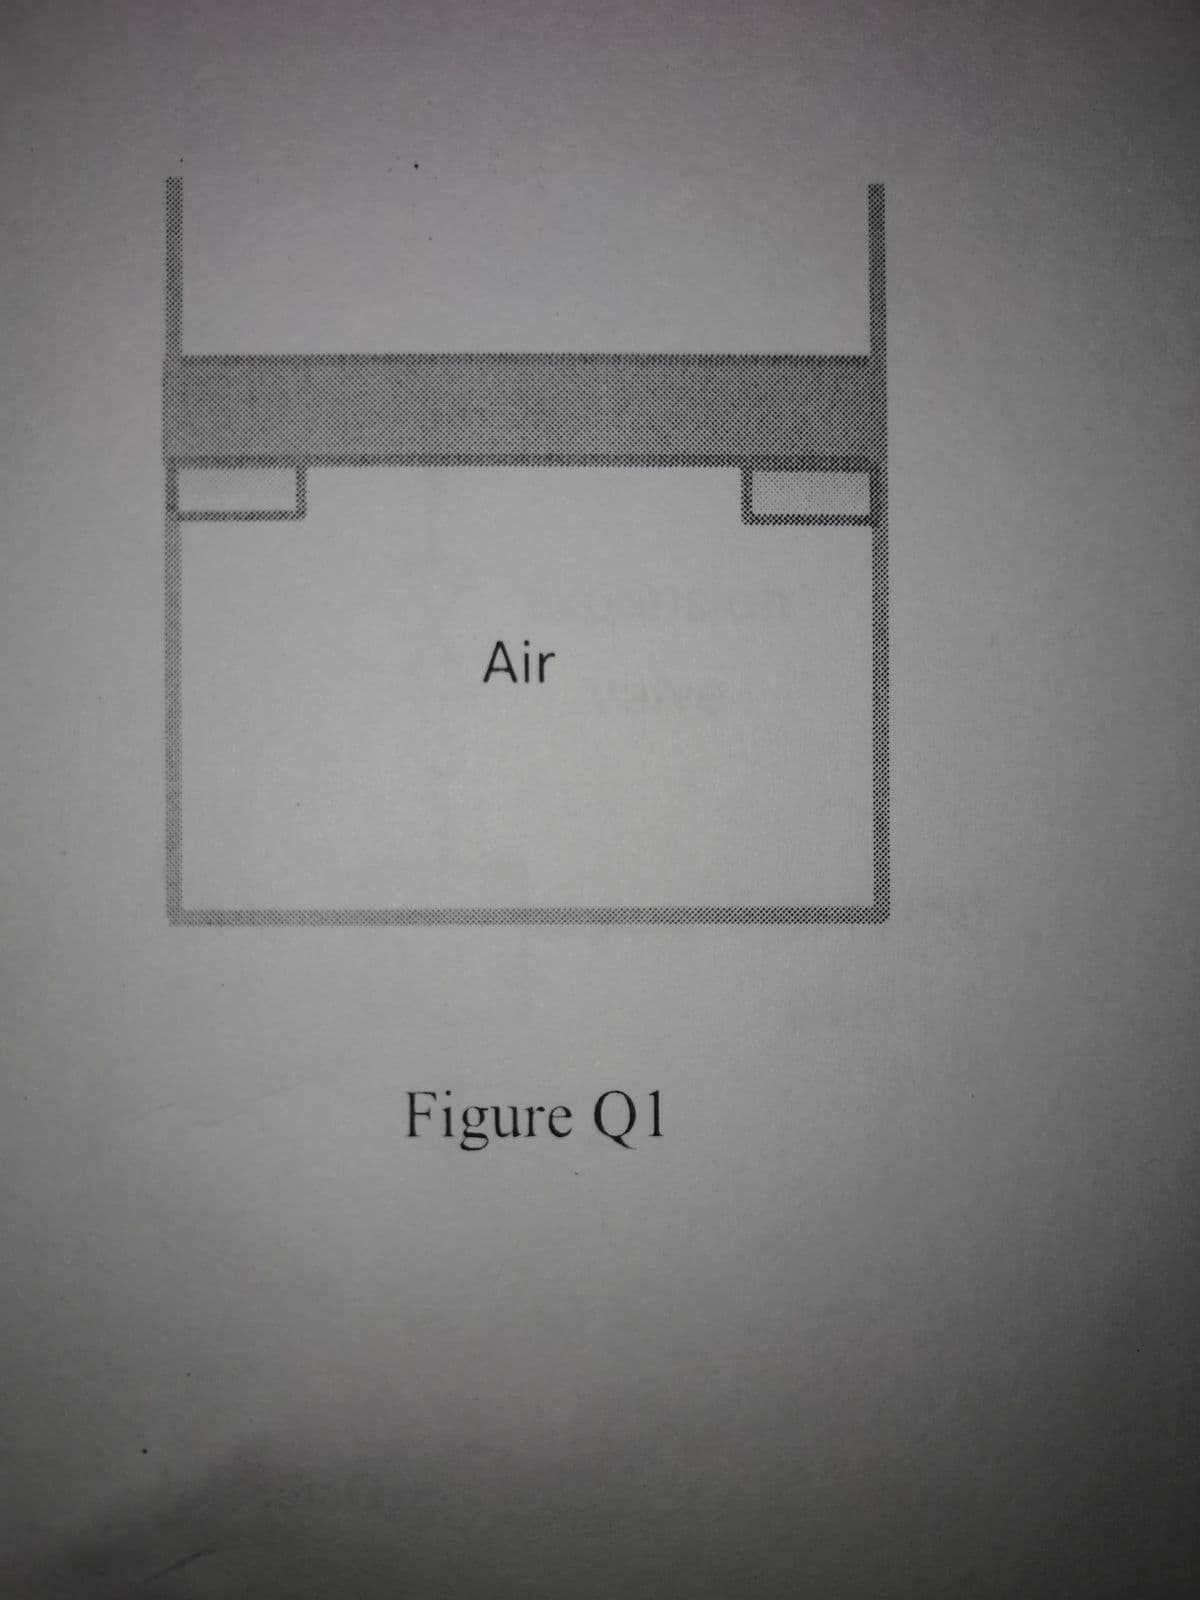 Air
Figure Q1
